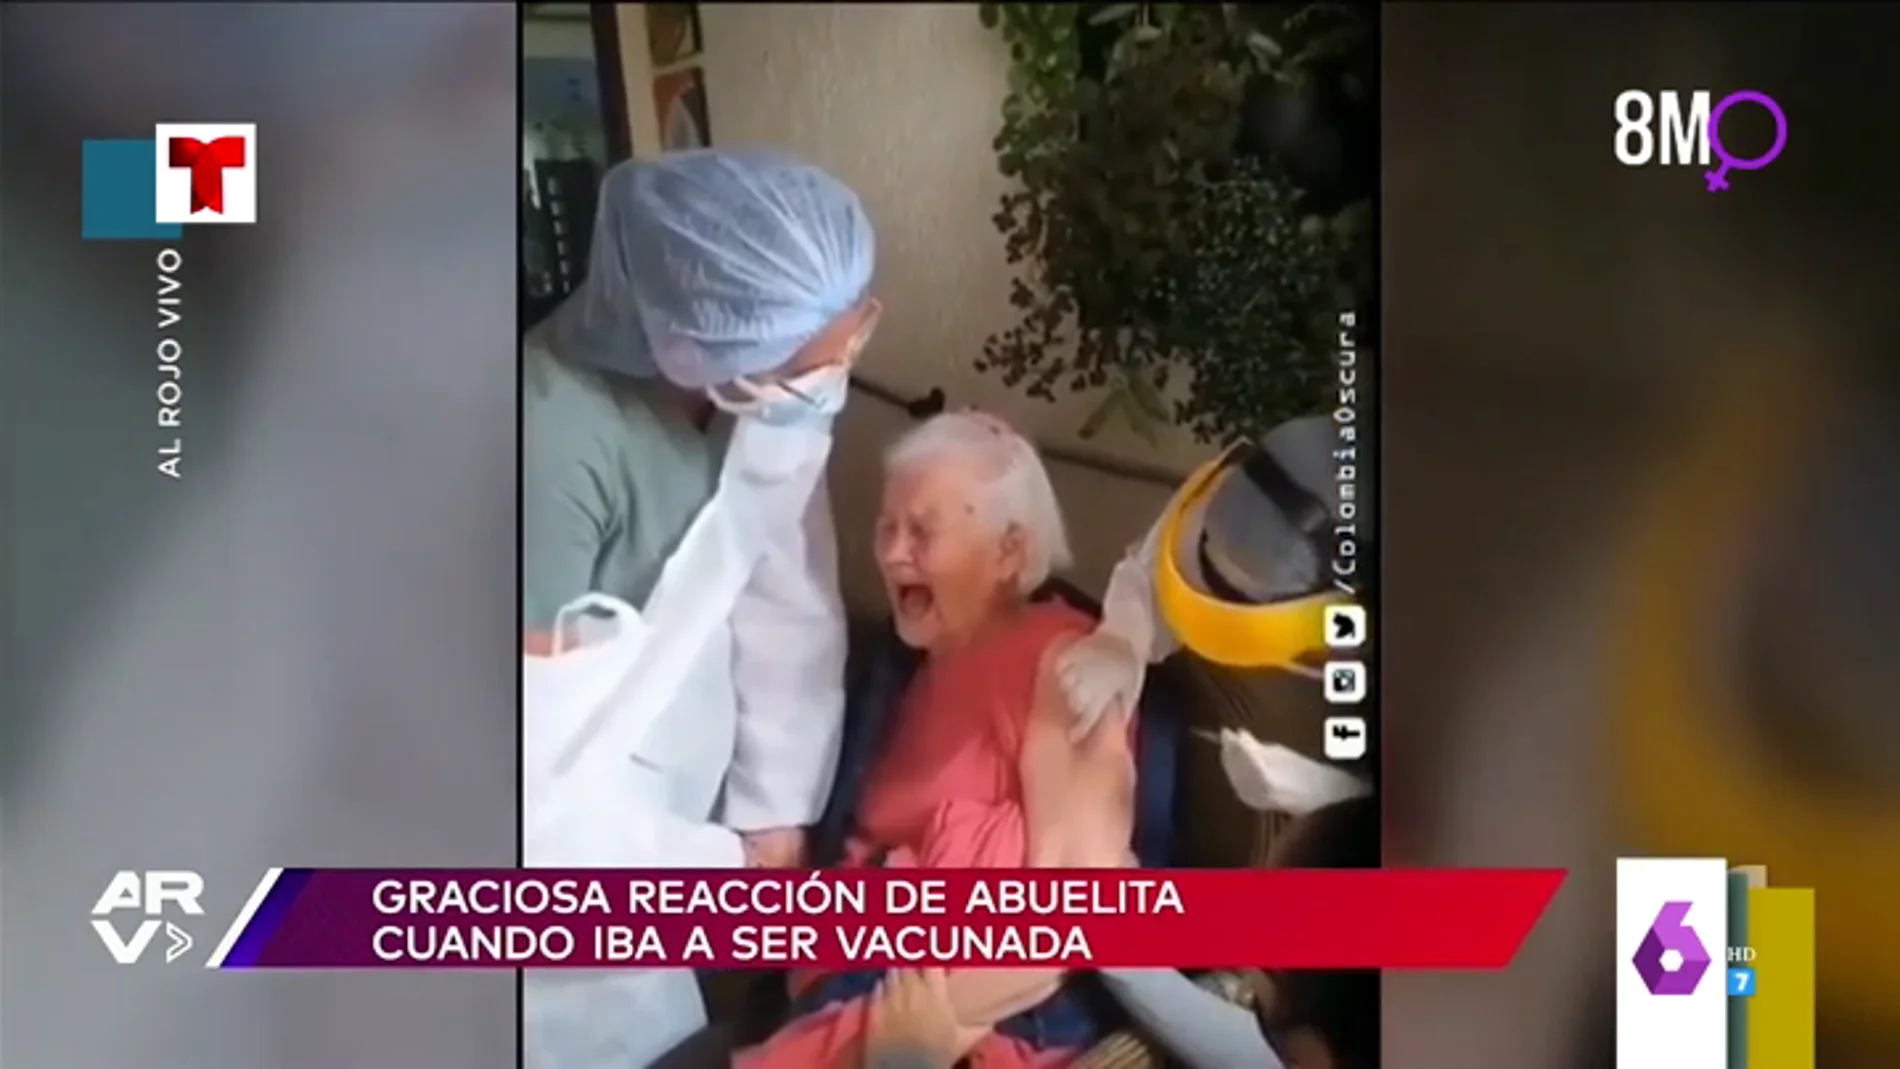 La divertida reacción de una señora al ser vacuna: así suelta un inesperado grito ante la sorpresa de su hija